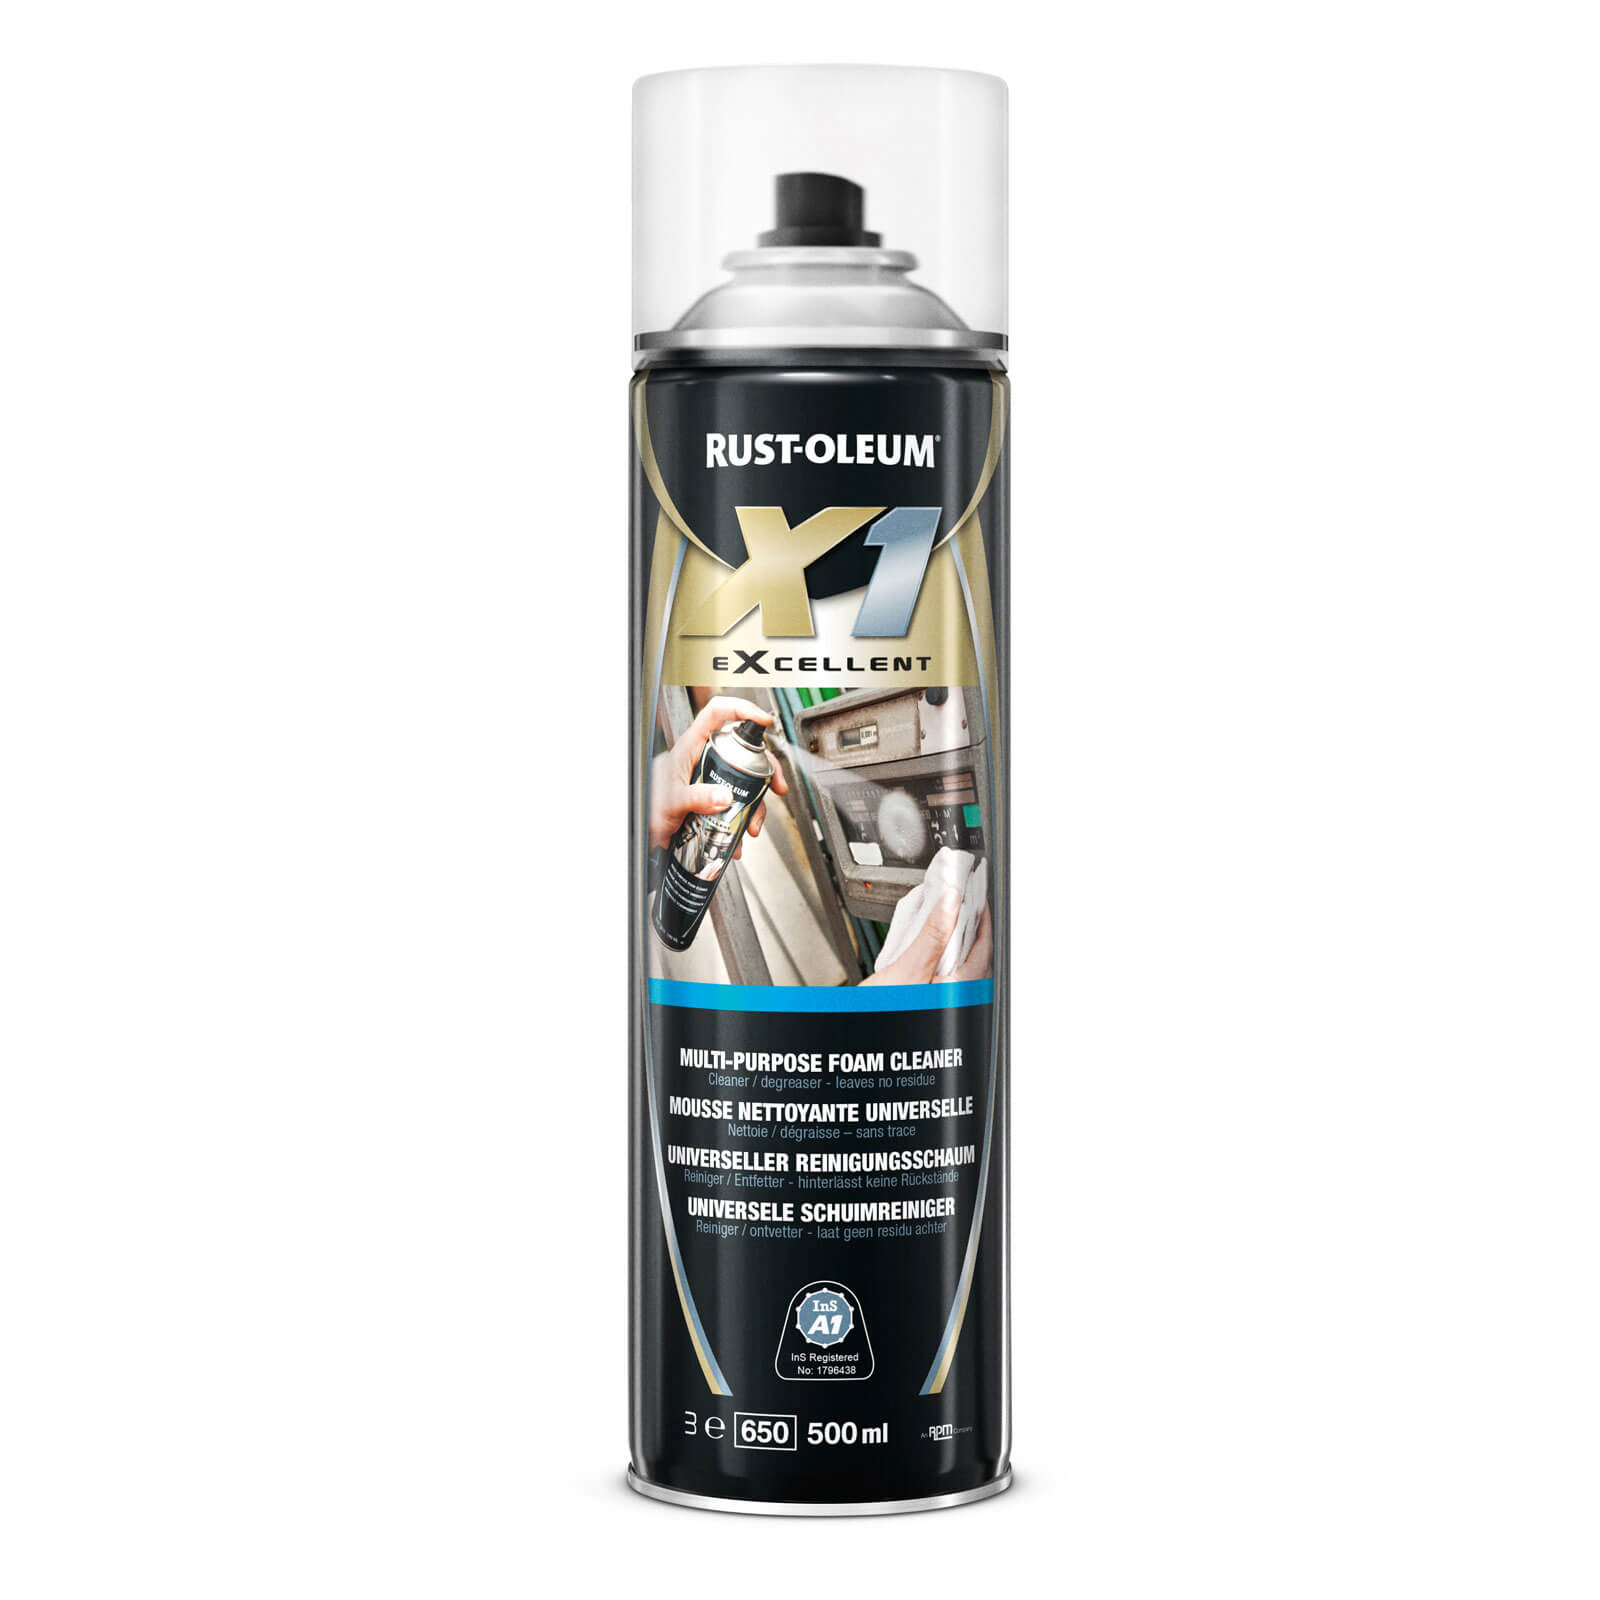 Image of Rust Oleum X1 eXcellent Multi Purpose Foam Cleaner Spray 500ml